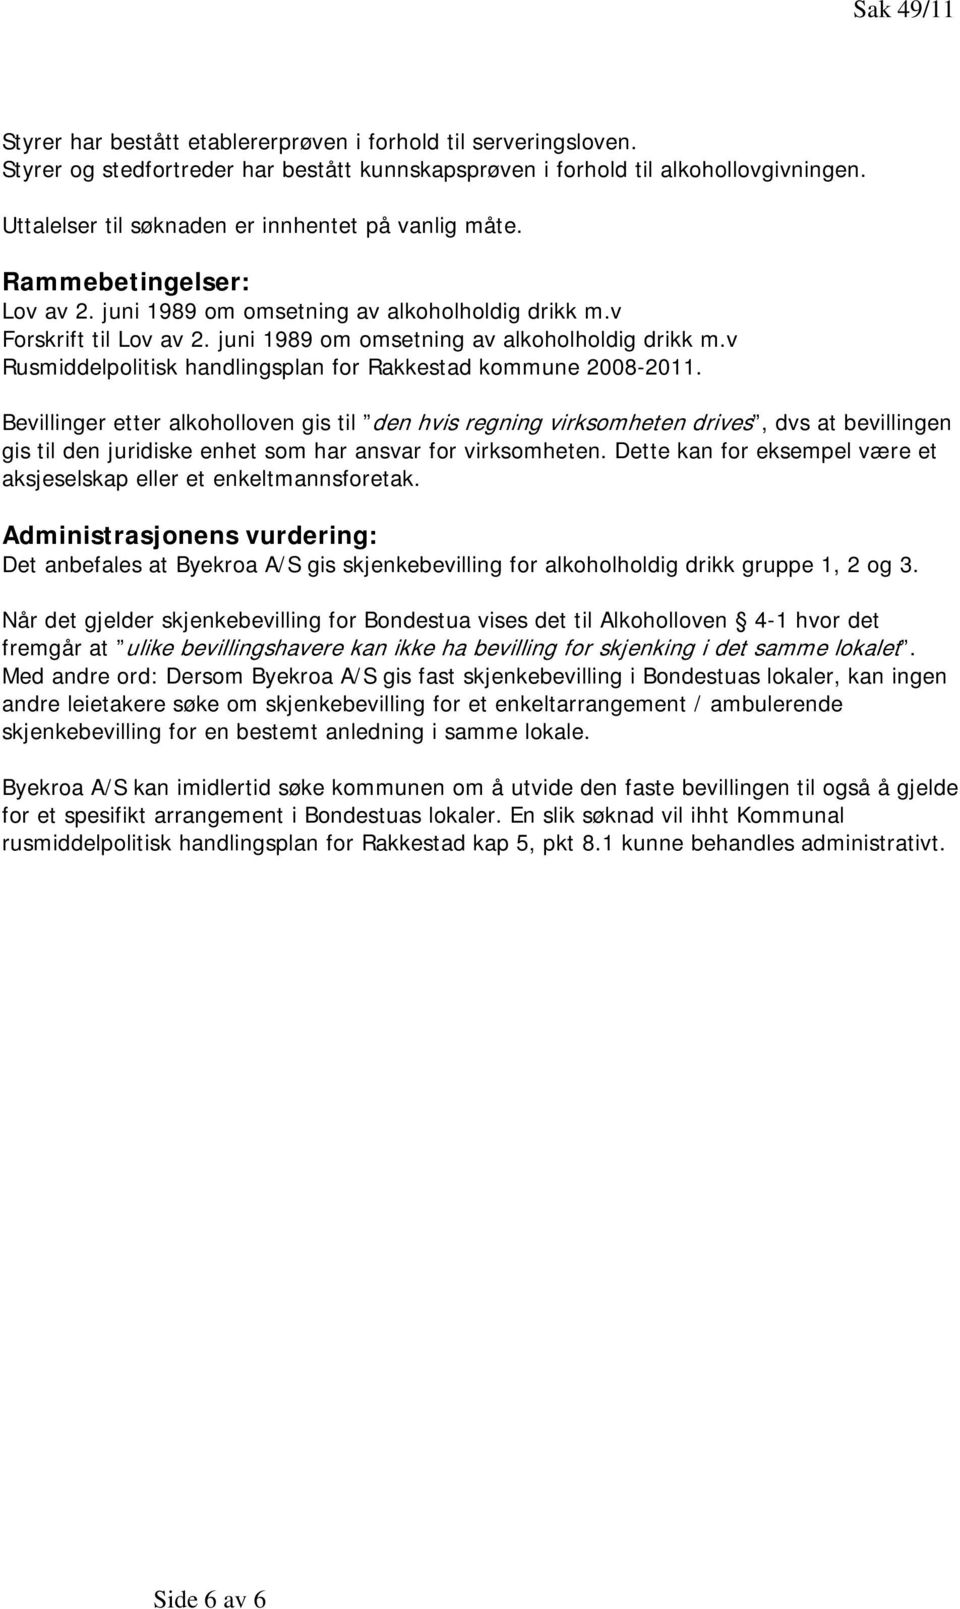 juni 1989 om omsetning av alkoholholdig drikk m.v Rusmiddelpolitisk handlingsplan for Rakkestad kommune 2008-2011.